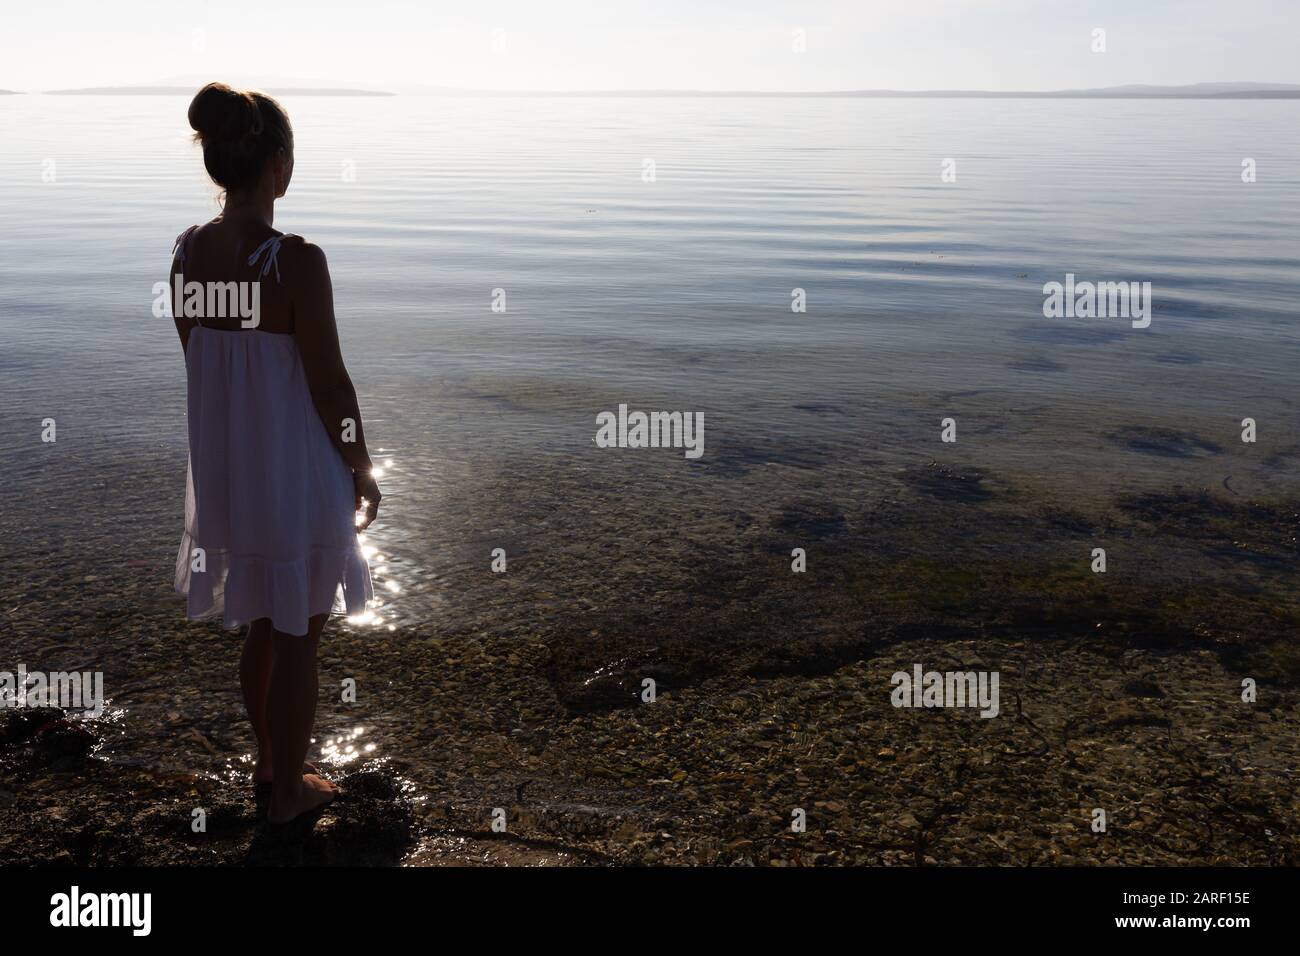 Donna giovane di colore bianco, con silhouette e luce sul retro, con vista sulla splendida e incontaminata baia costiera, in una tranquilla mattinata in South Australia. Foto Stock